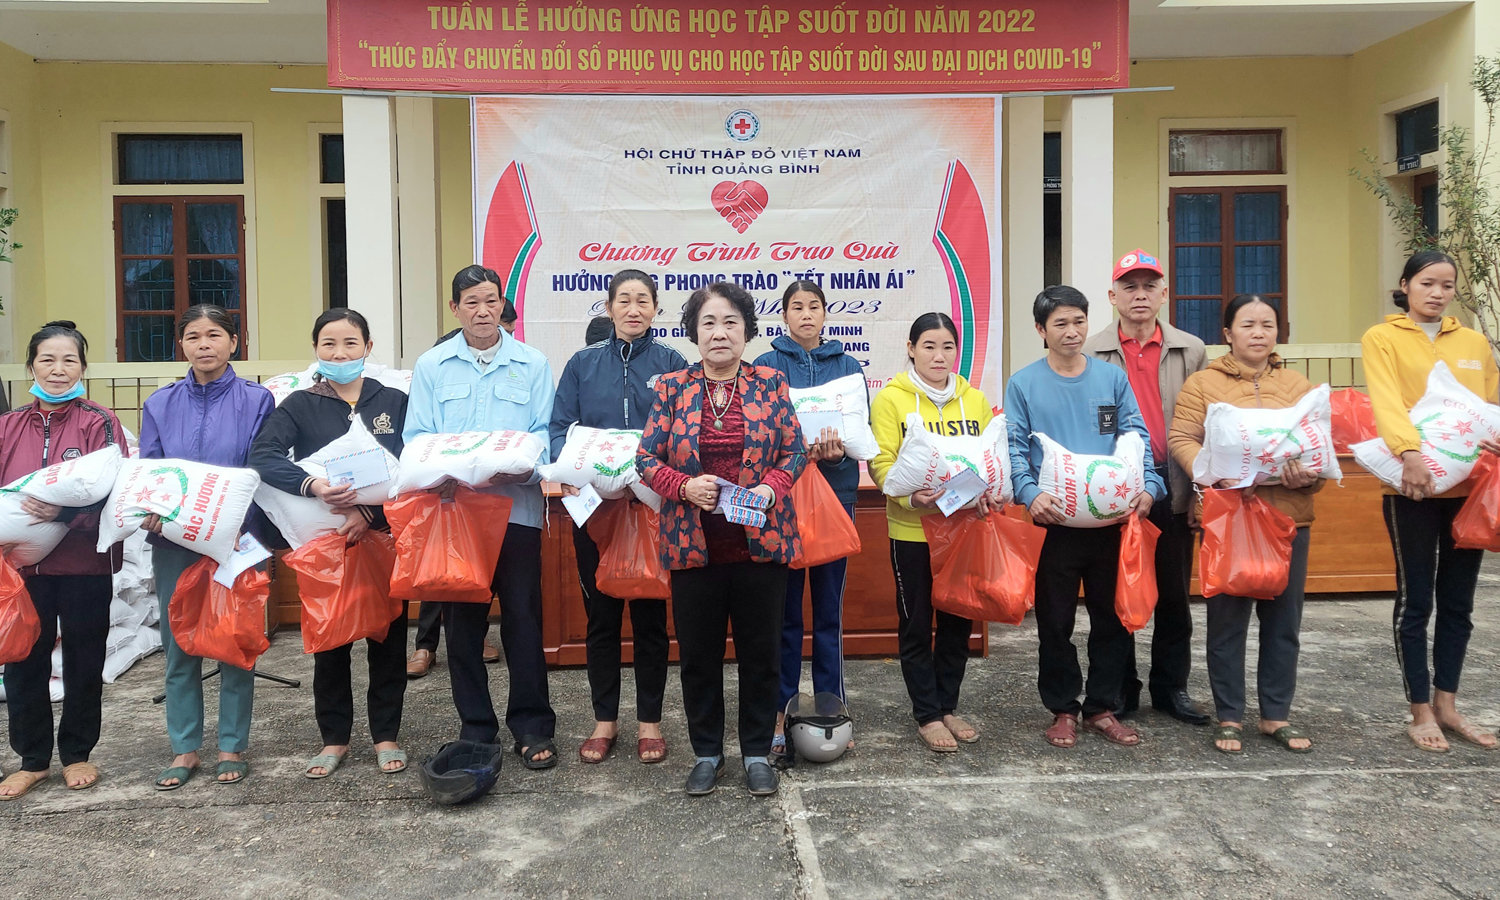 Đại diện Hội Chữ thập đỏ tỉnh, huyện Tuyên Hóa và nhà hảo tâm trao quà Tết cho người dân.